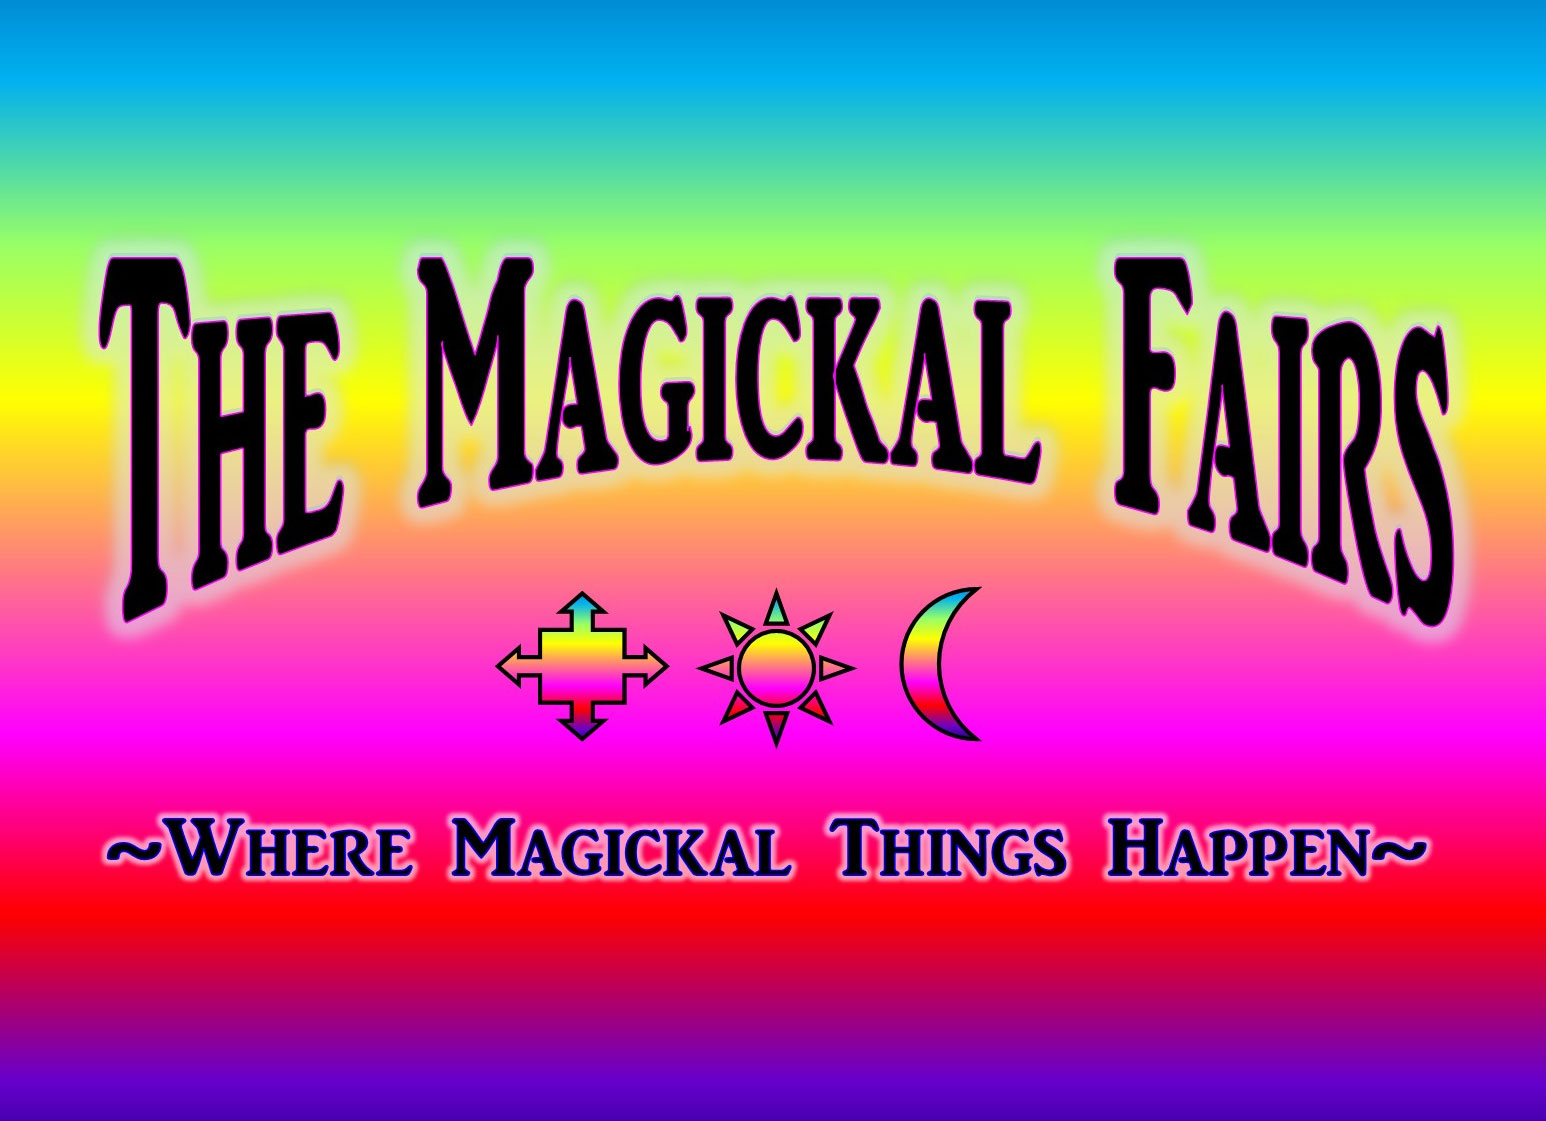 Magickal Halloween Fair at New Britain VFW